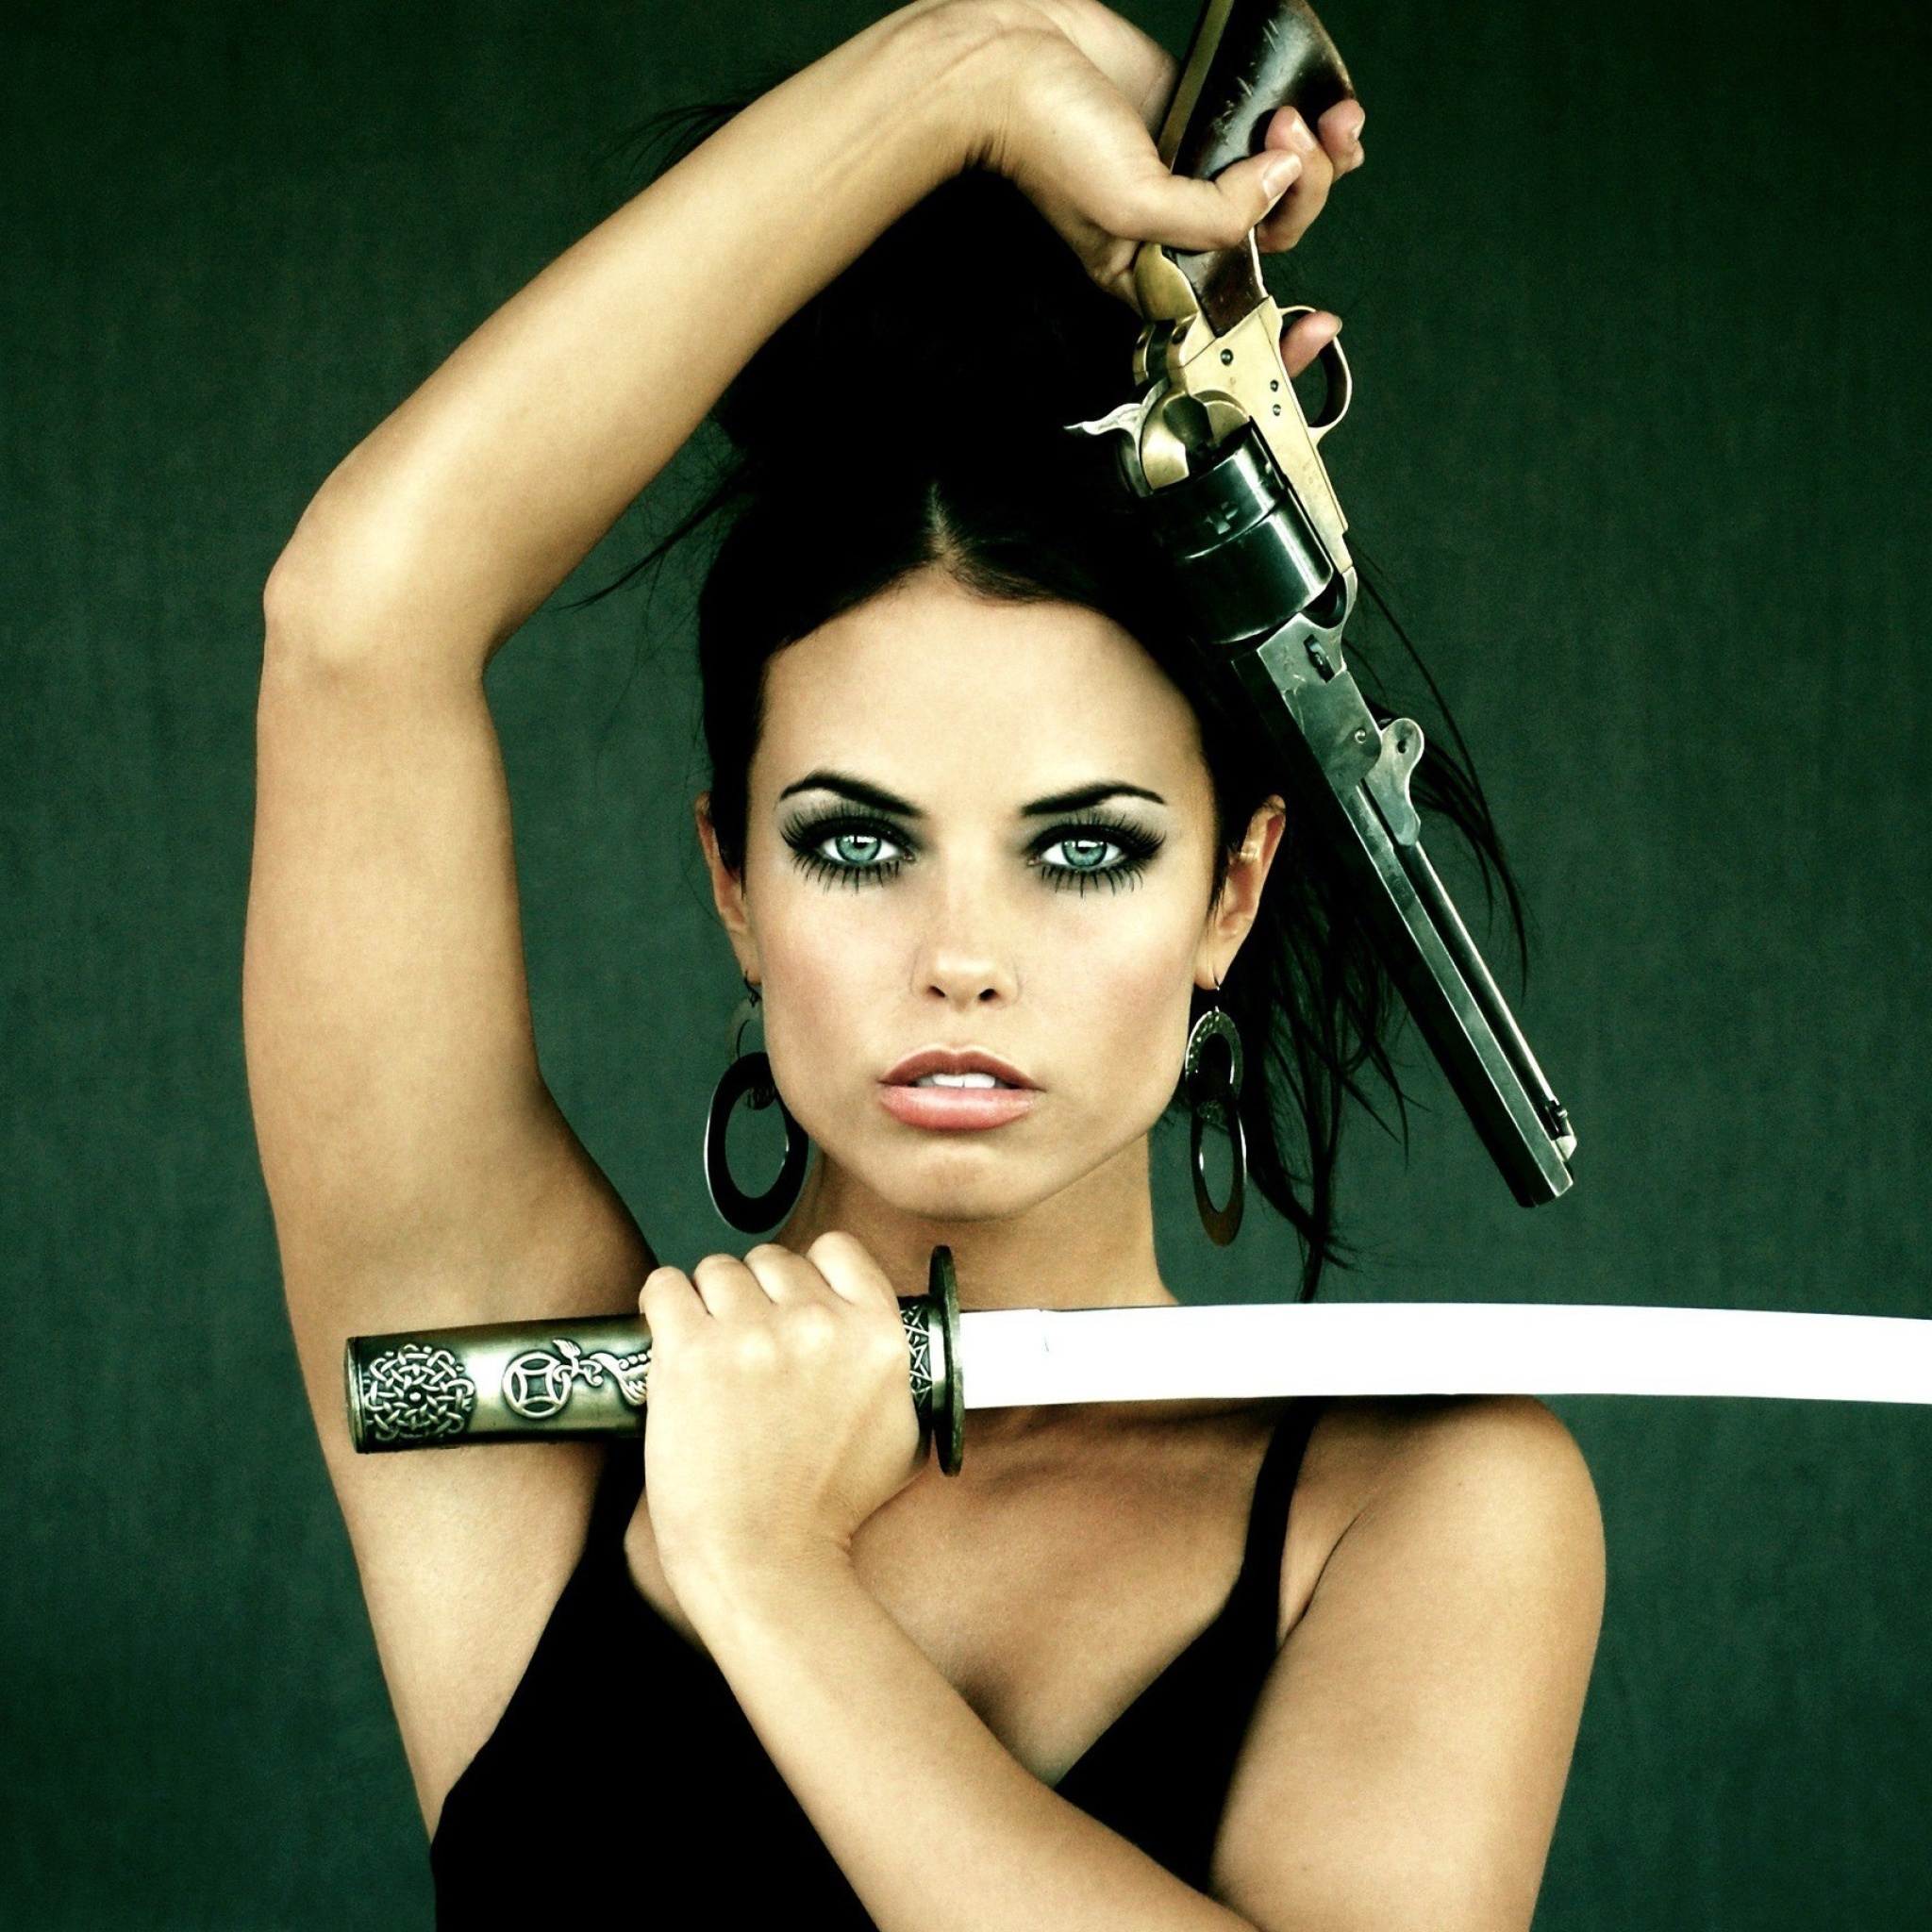 Warrior girl with swords wallpaper 2048x2048